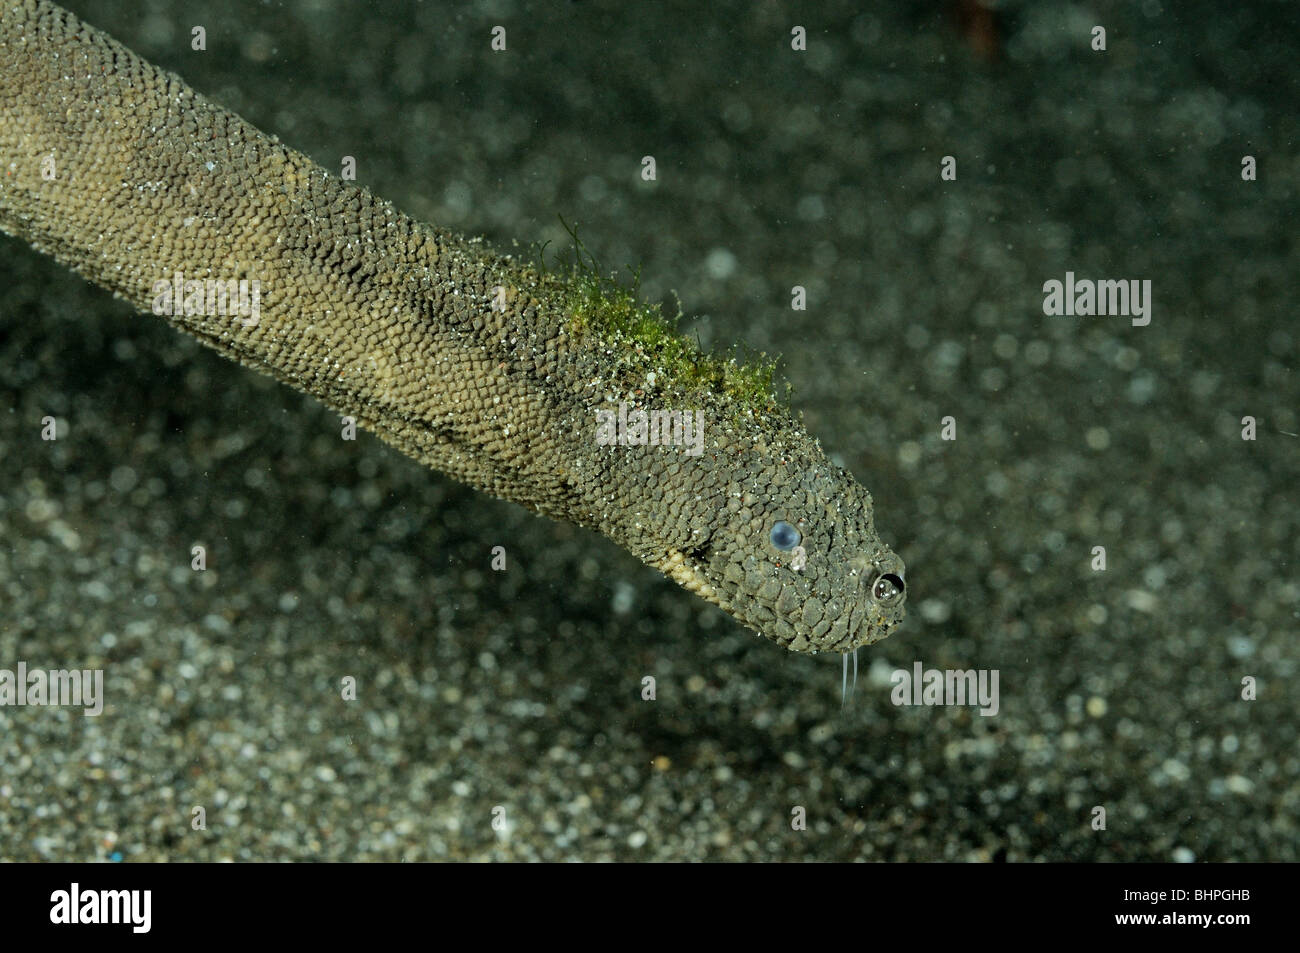 Enhydrina schistosa Picuda, serpiente de mar, Secret Bay, Gilimanuk, Bali, Indonesia, del Indo-Pacifico, Foto de stock